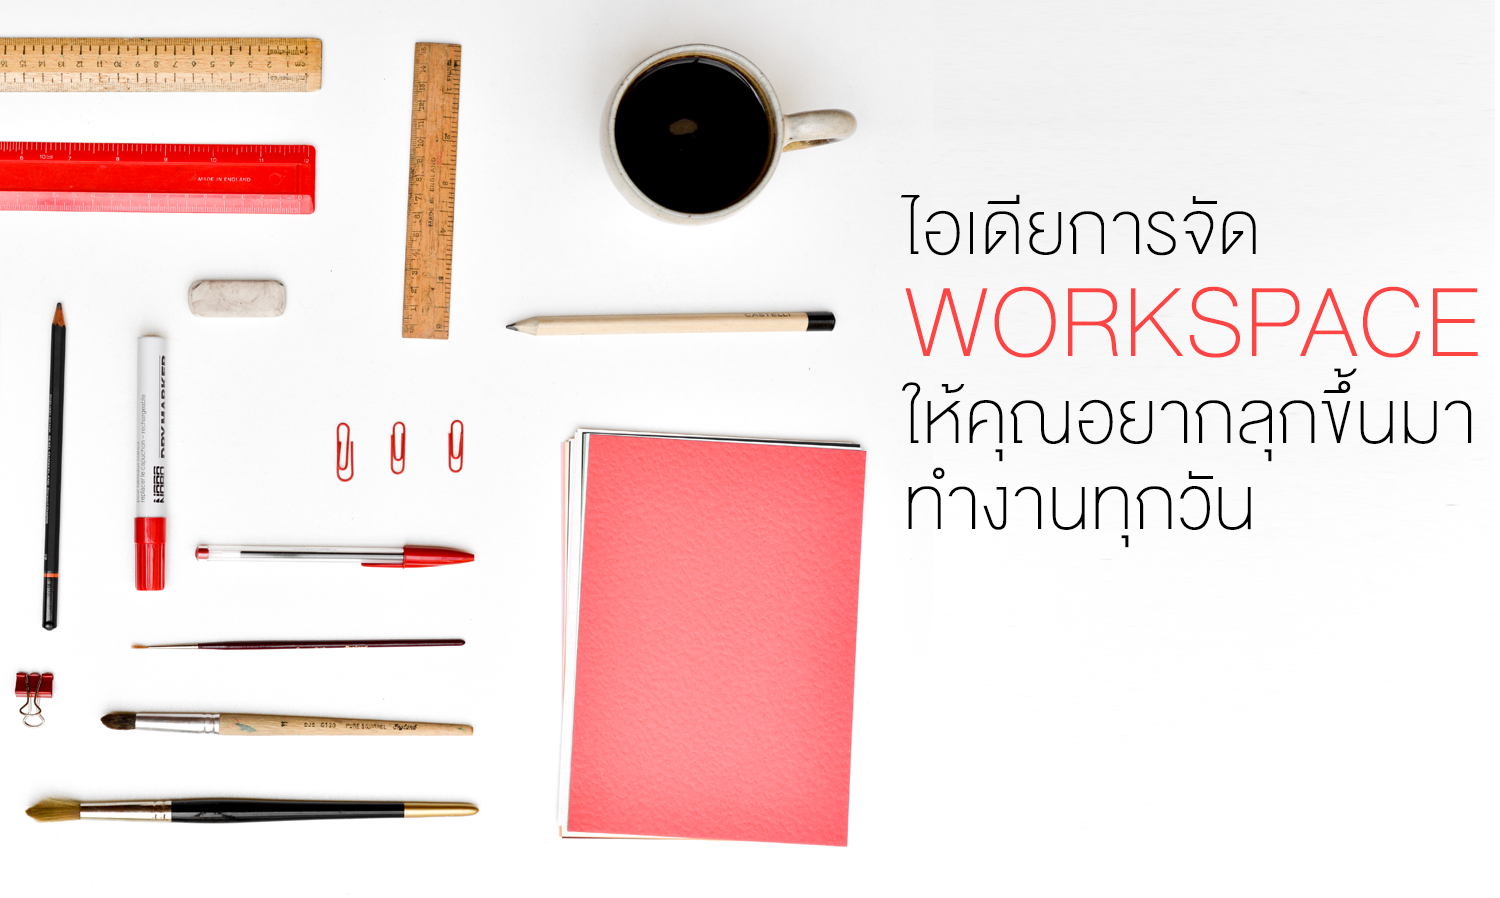 ไอเดียการจัด workspace ให้คุณอยากลุกขึ้นมาทำงานทุกวัน 